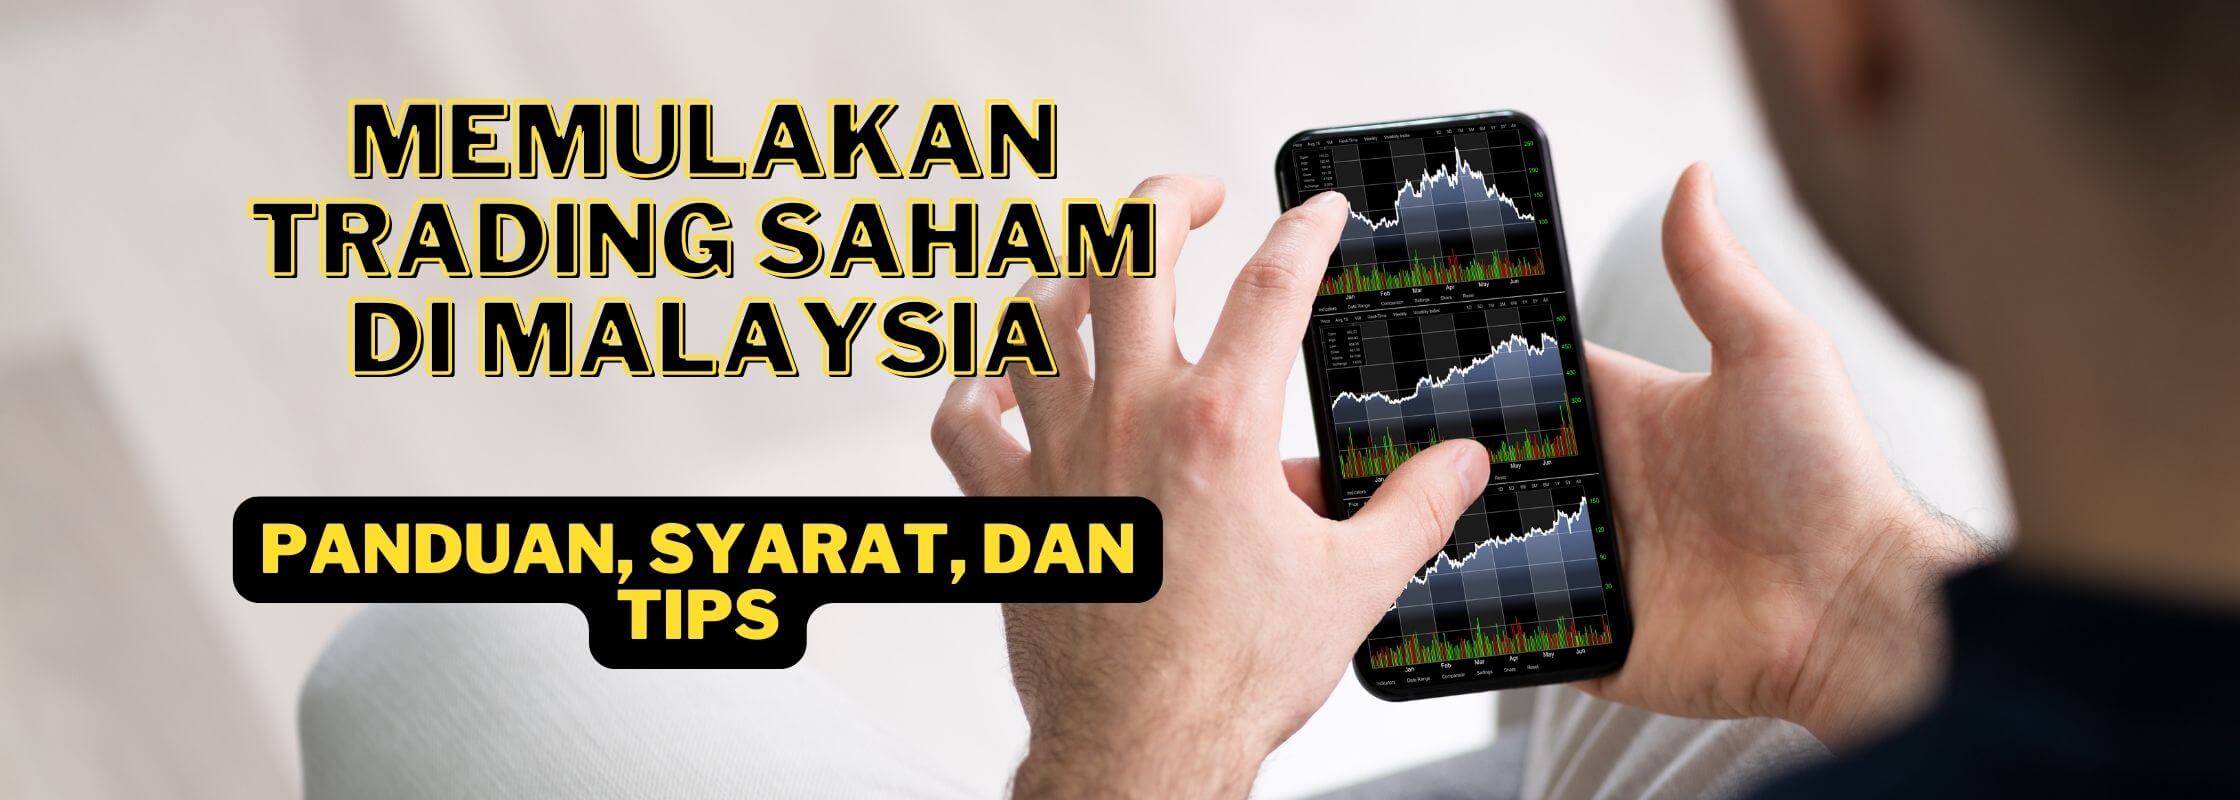 panduan trading saham di malaysia